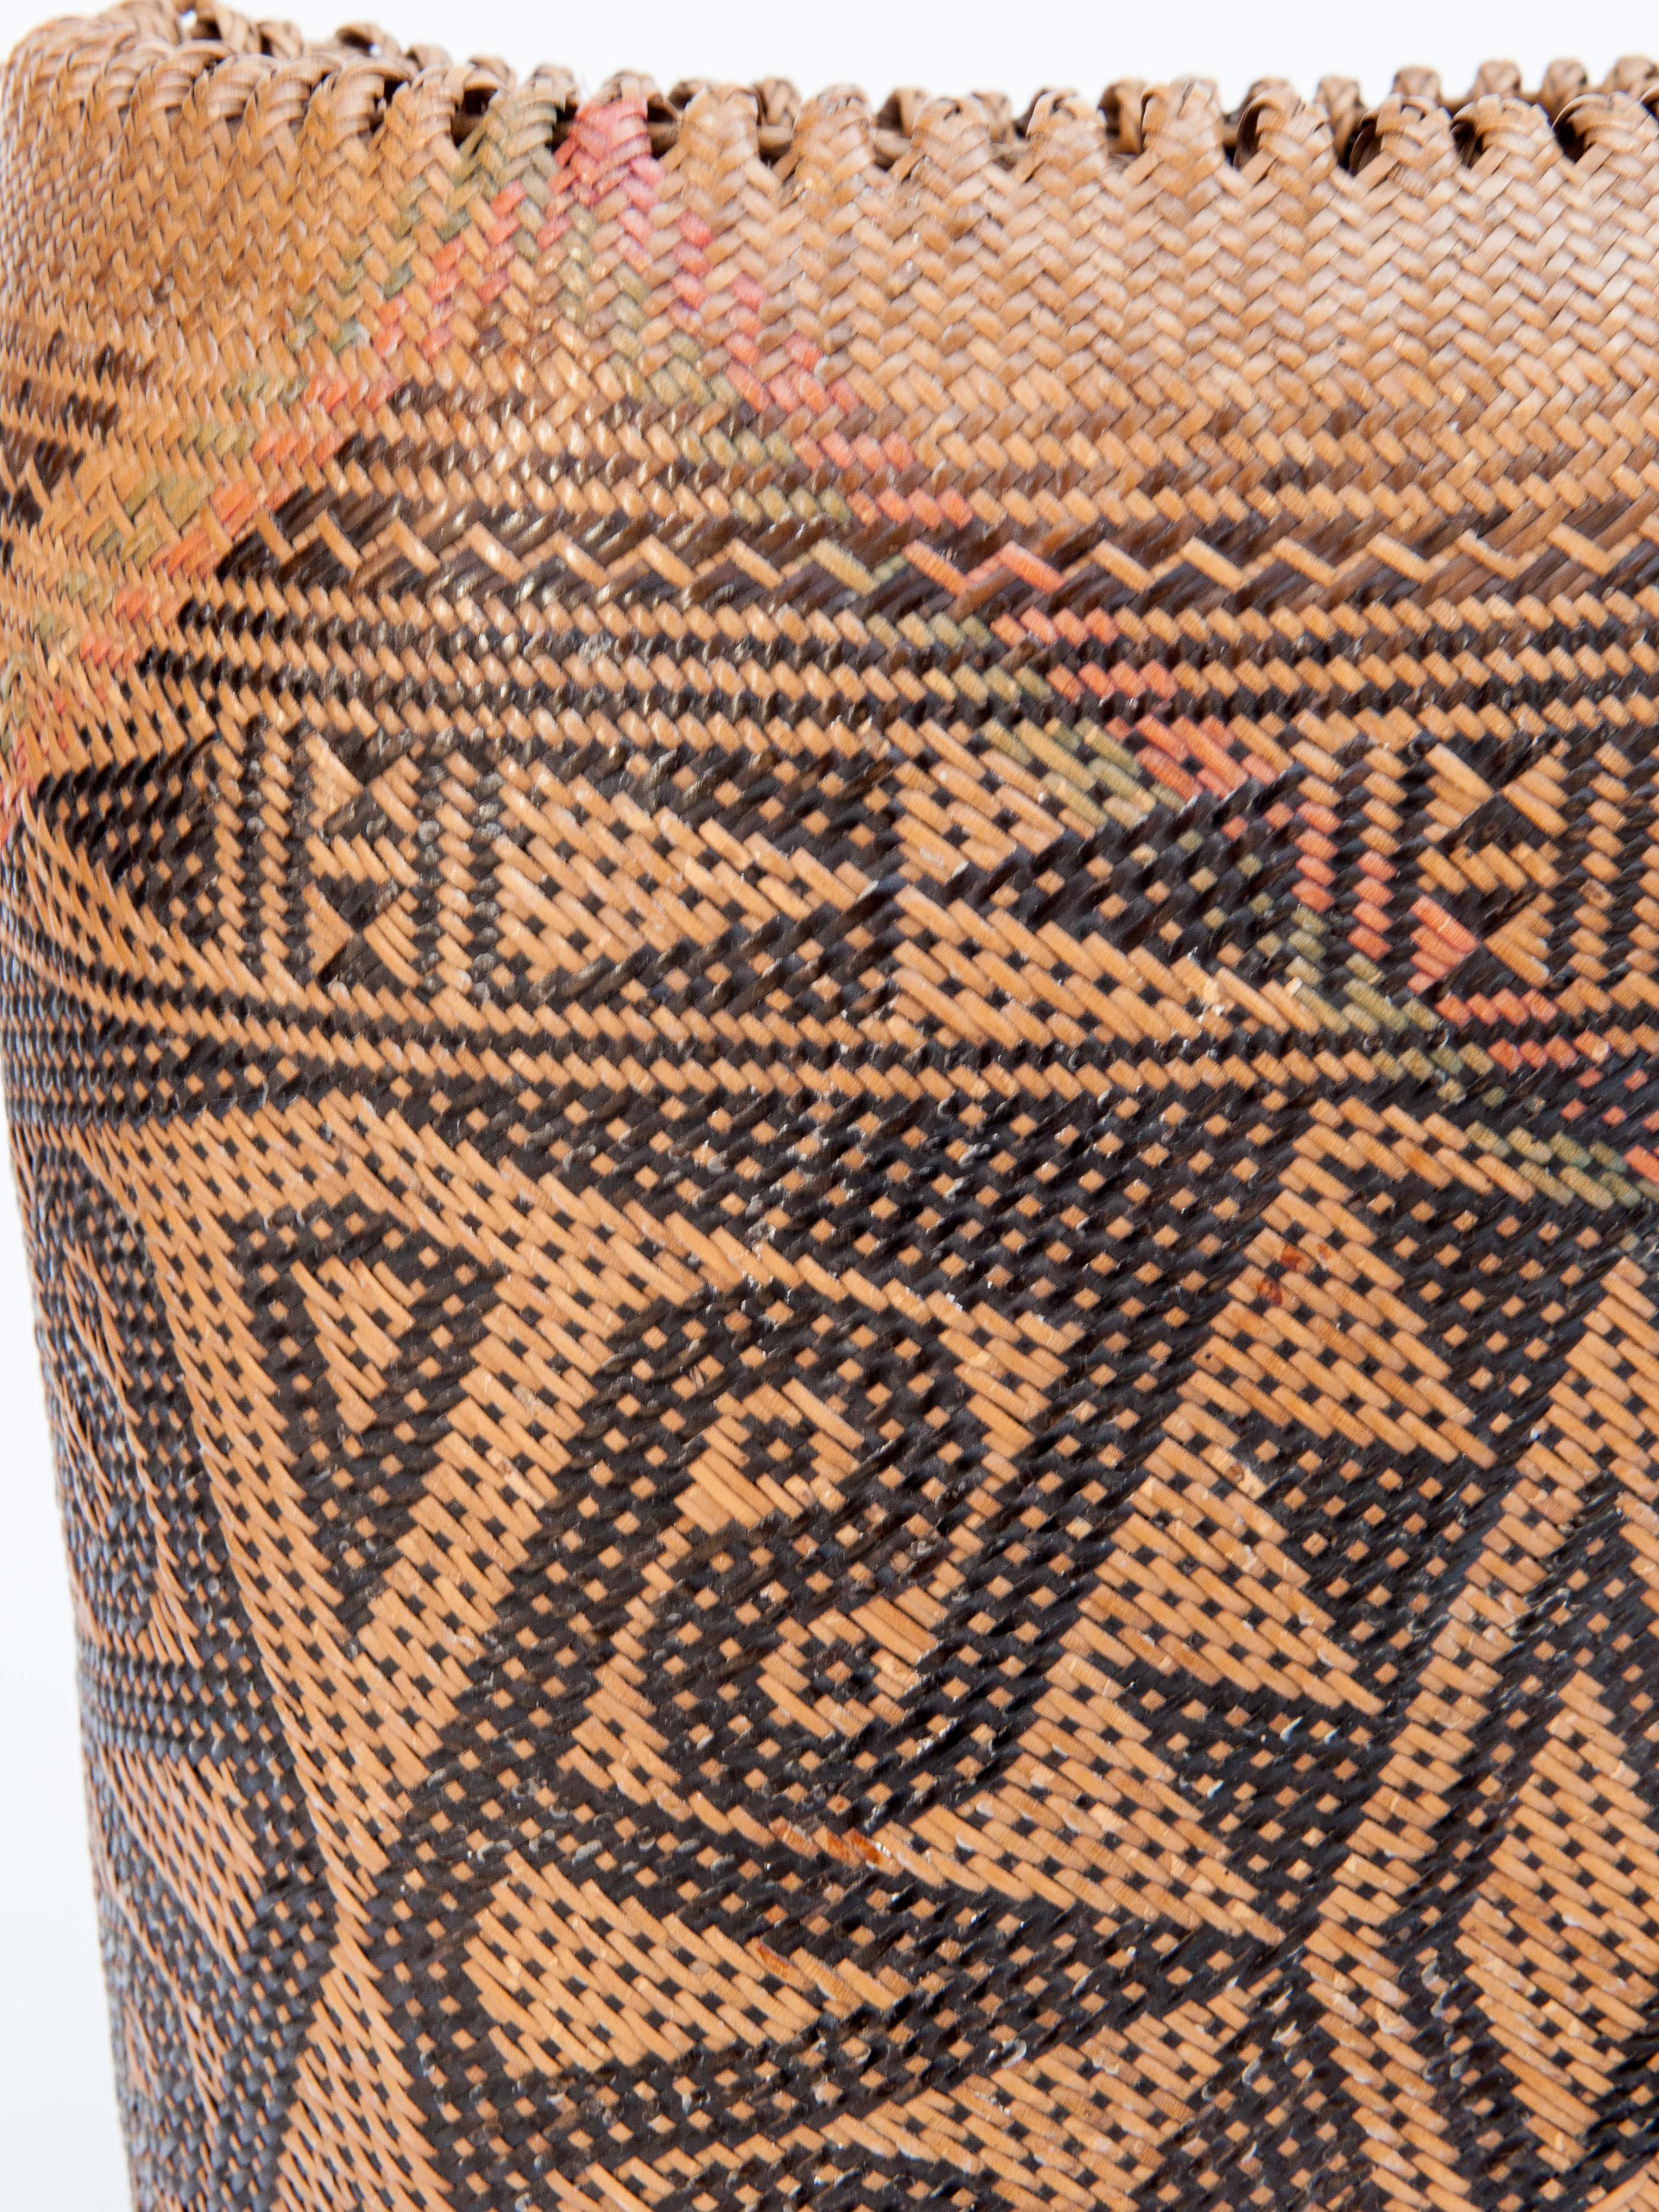 Rattan Drawstring Shoulder Bag Basket, Punan of Borneo, Late 20th Century 3